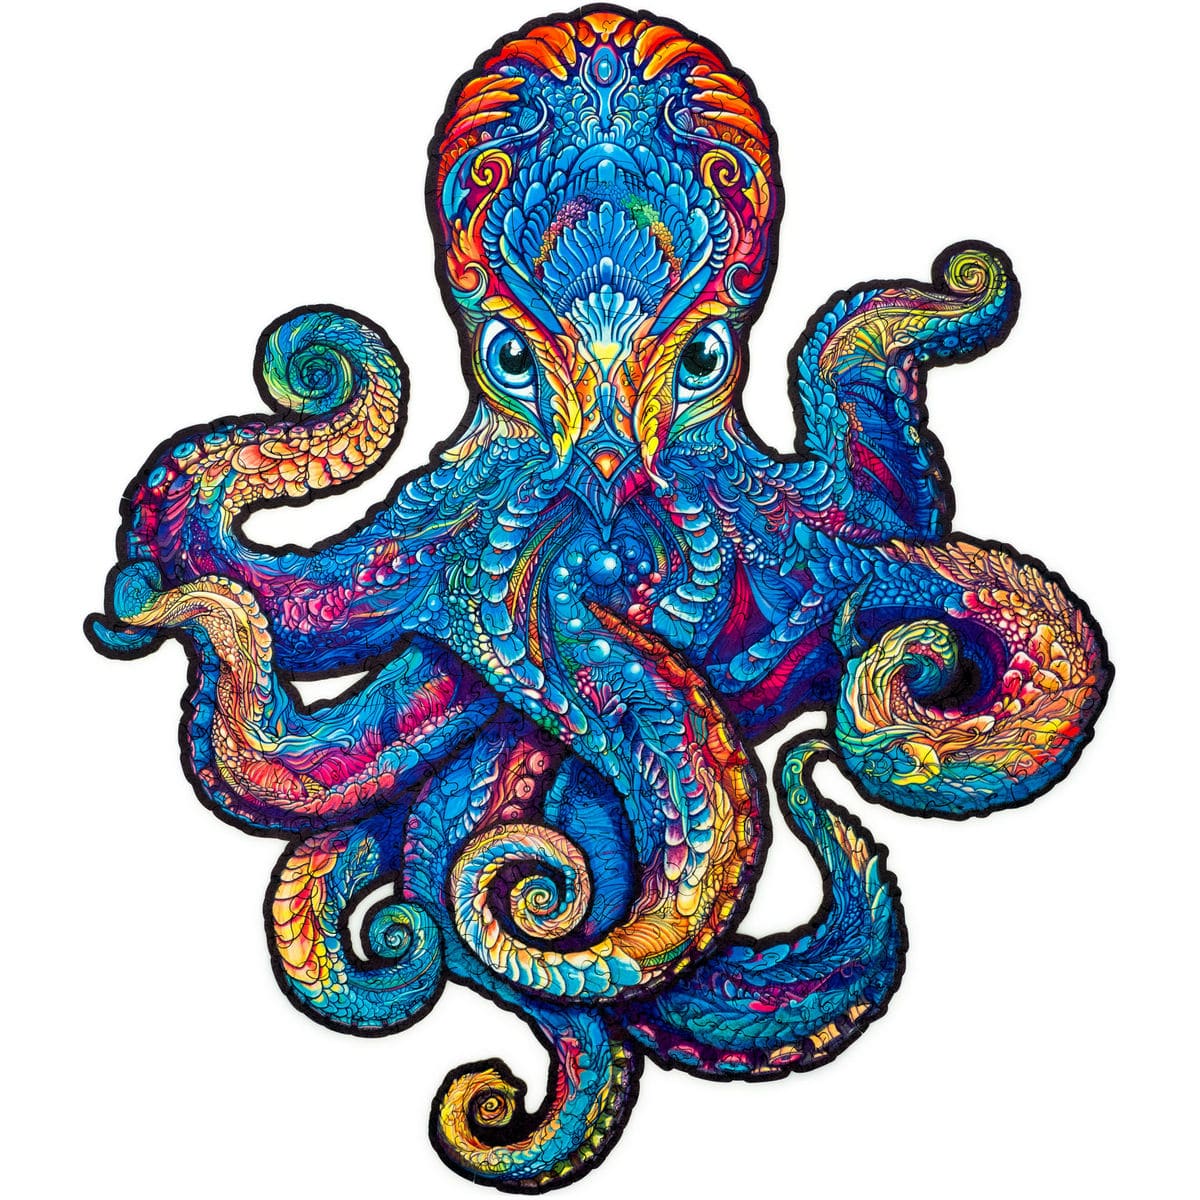 Magnetic Octopus Wooden Puzzle - Medium